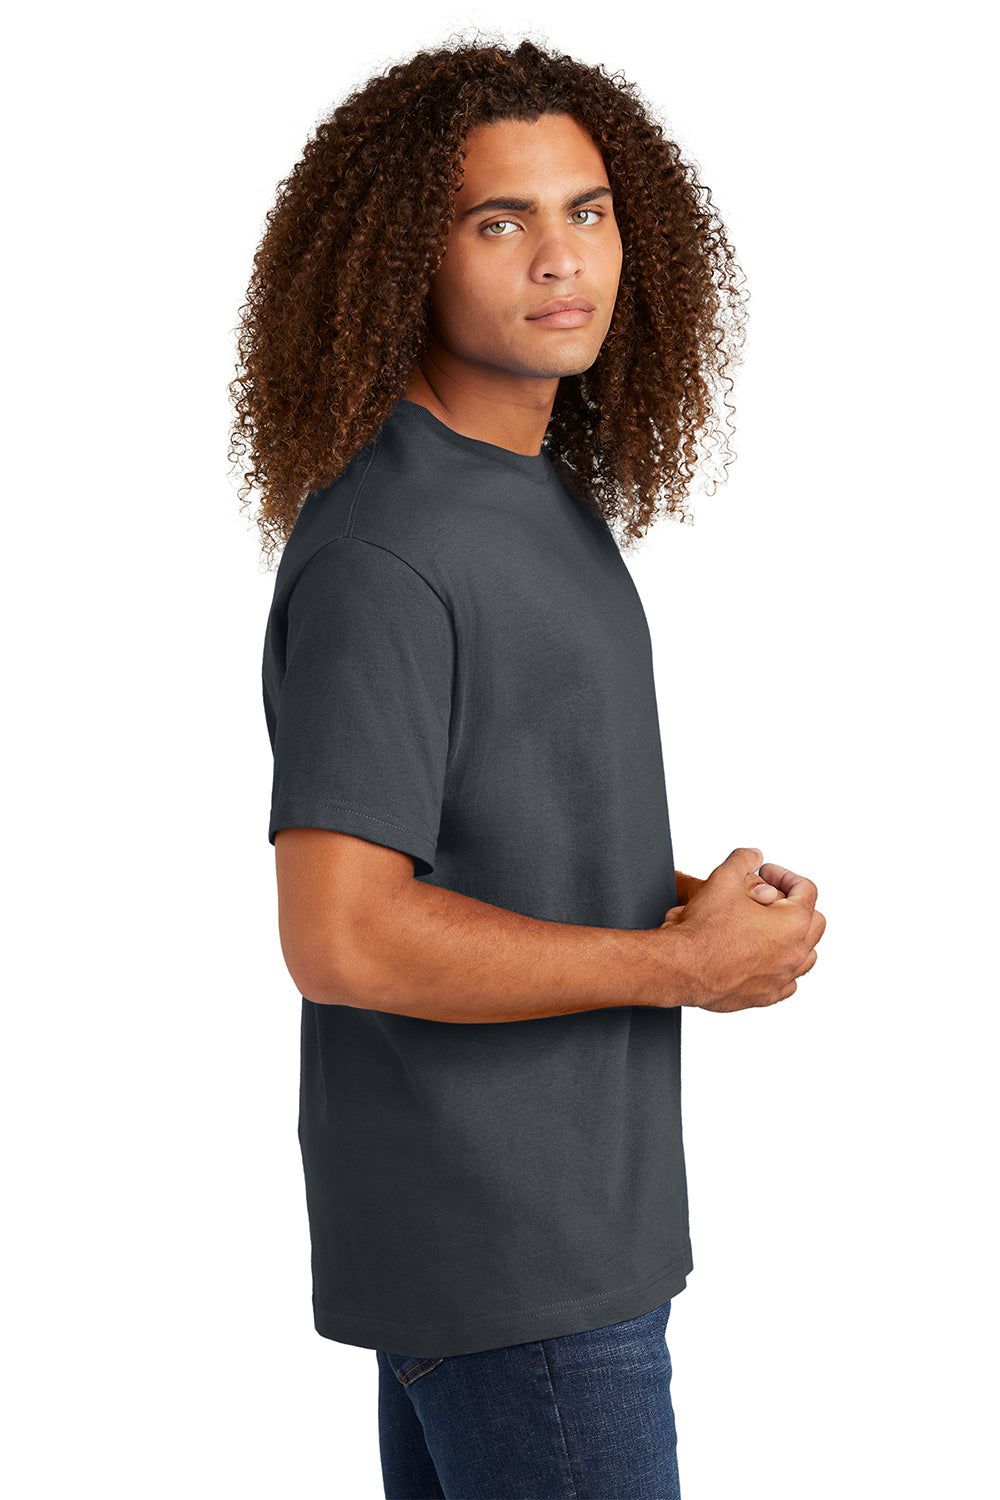 American Apparel 1301/AL1301 Mens Short Sleeve Crewneck T-Shirt Charcoal Grey Model Side